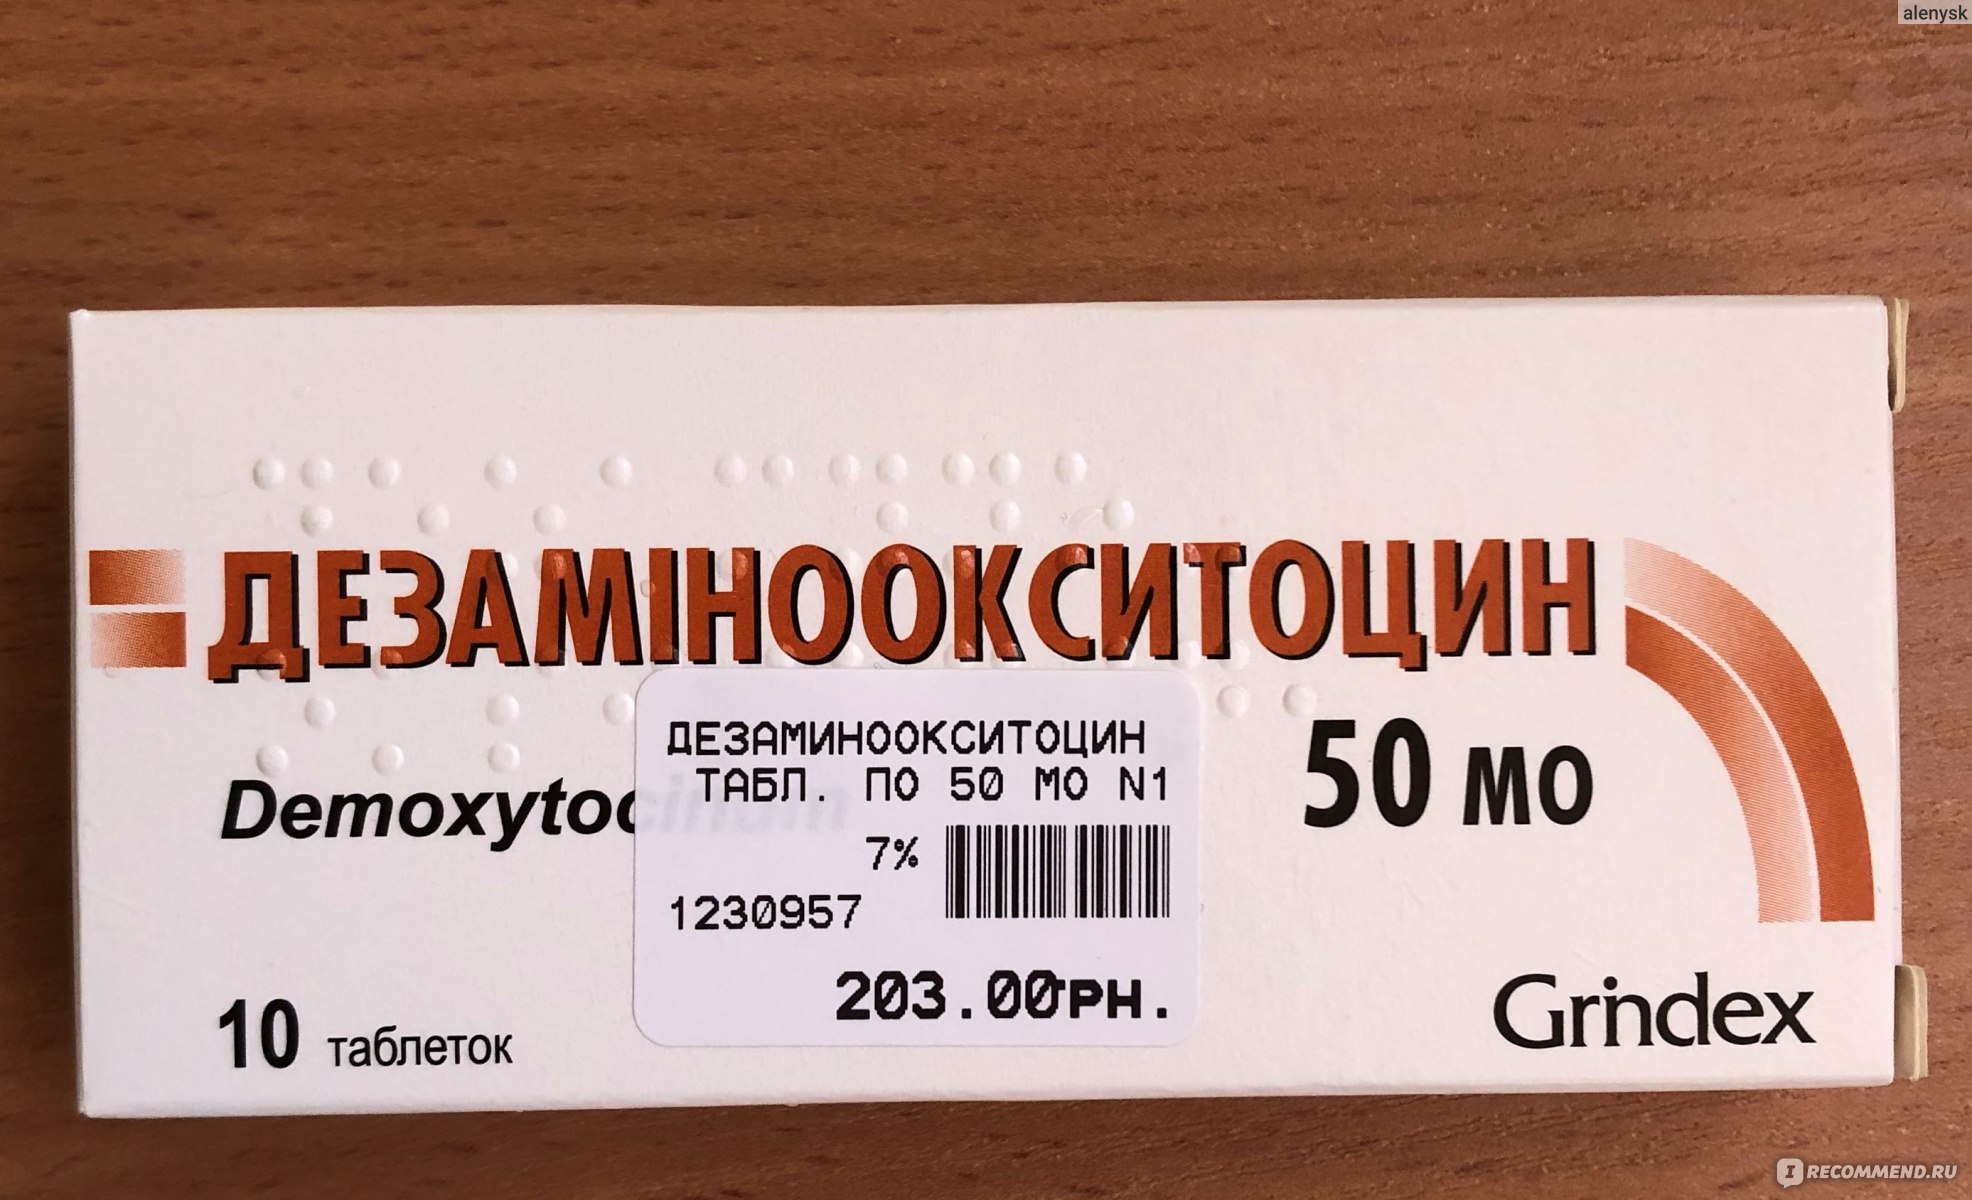 Окситоцин Уколы Купить В Москве